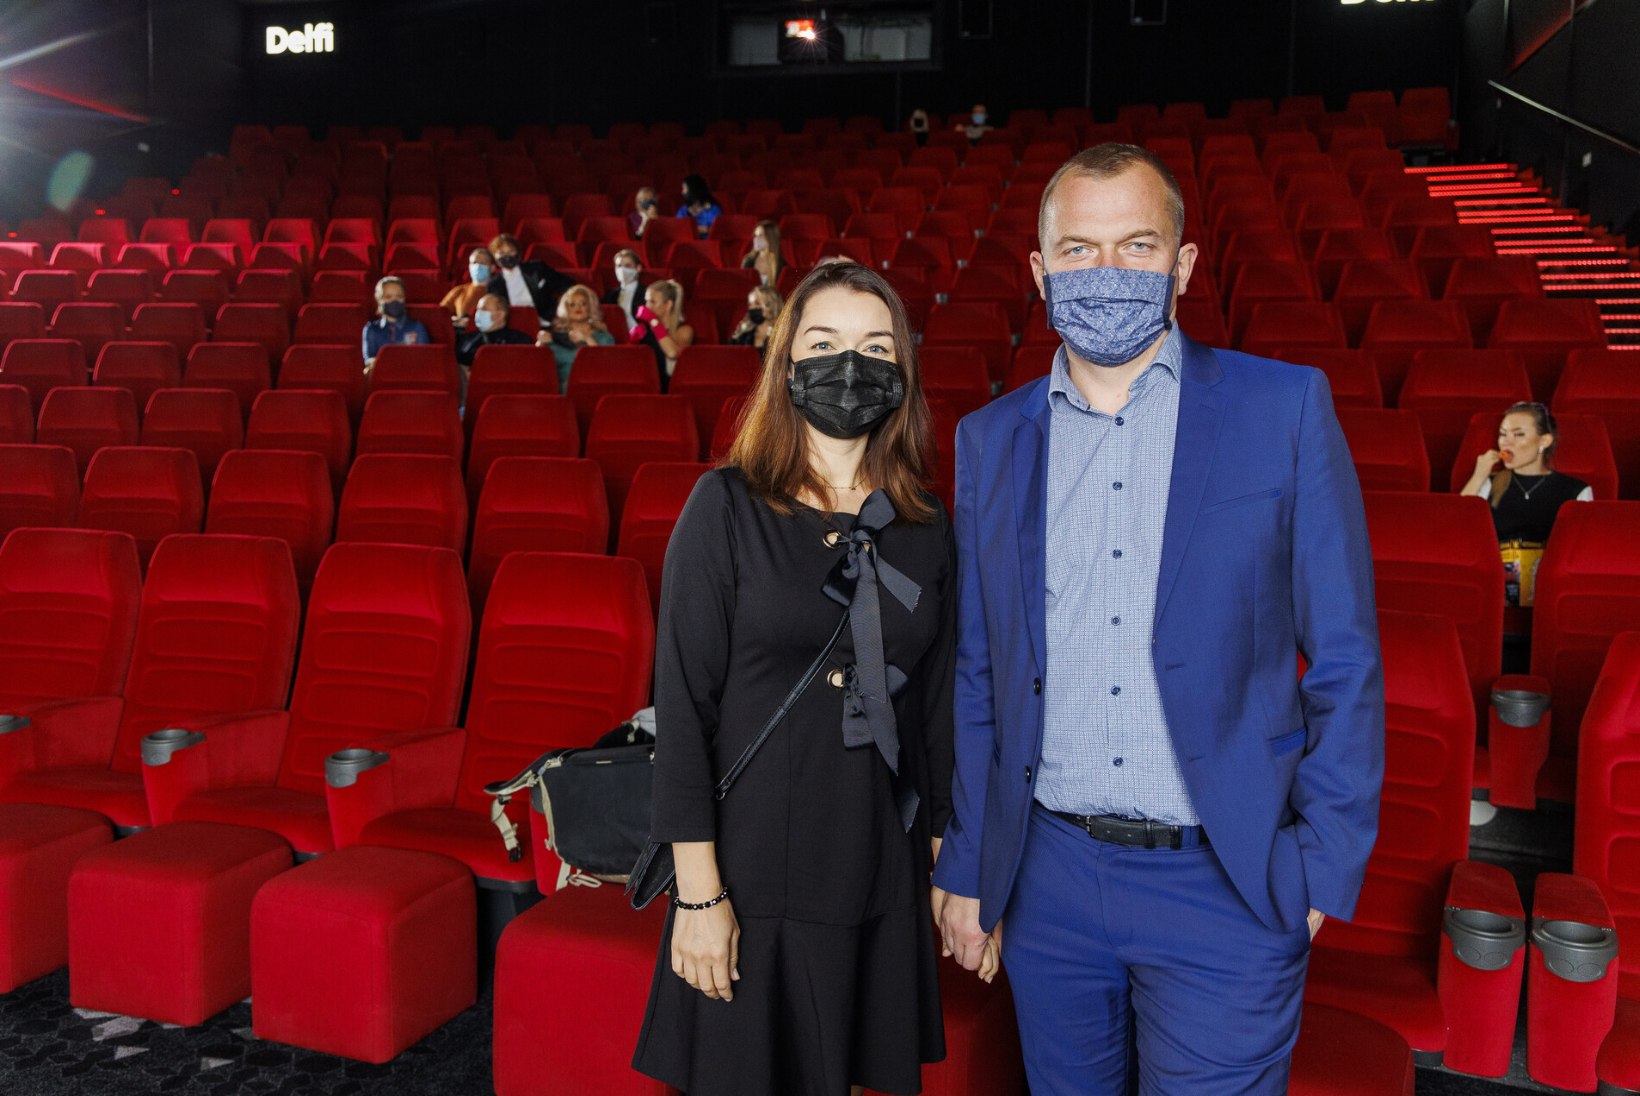 Eesti filmi esilinastusel naeratusi maski taha ei peidetud. Mart Sander: mina koroonaprovokatsioonidega kaasa ei lähe